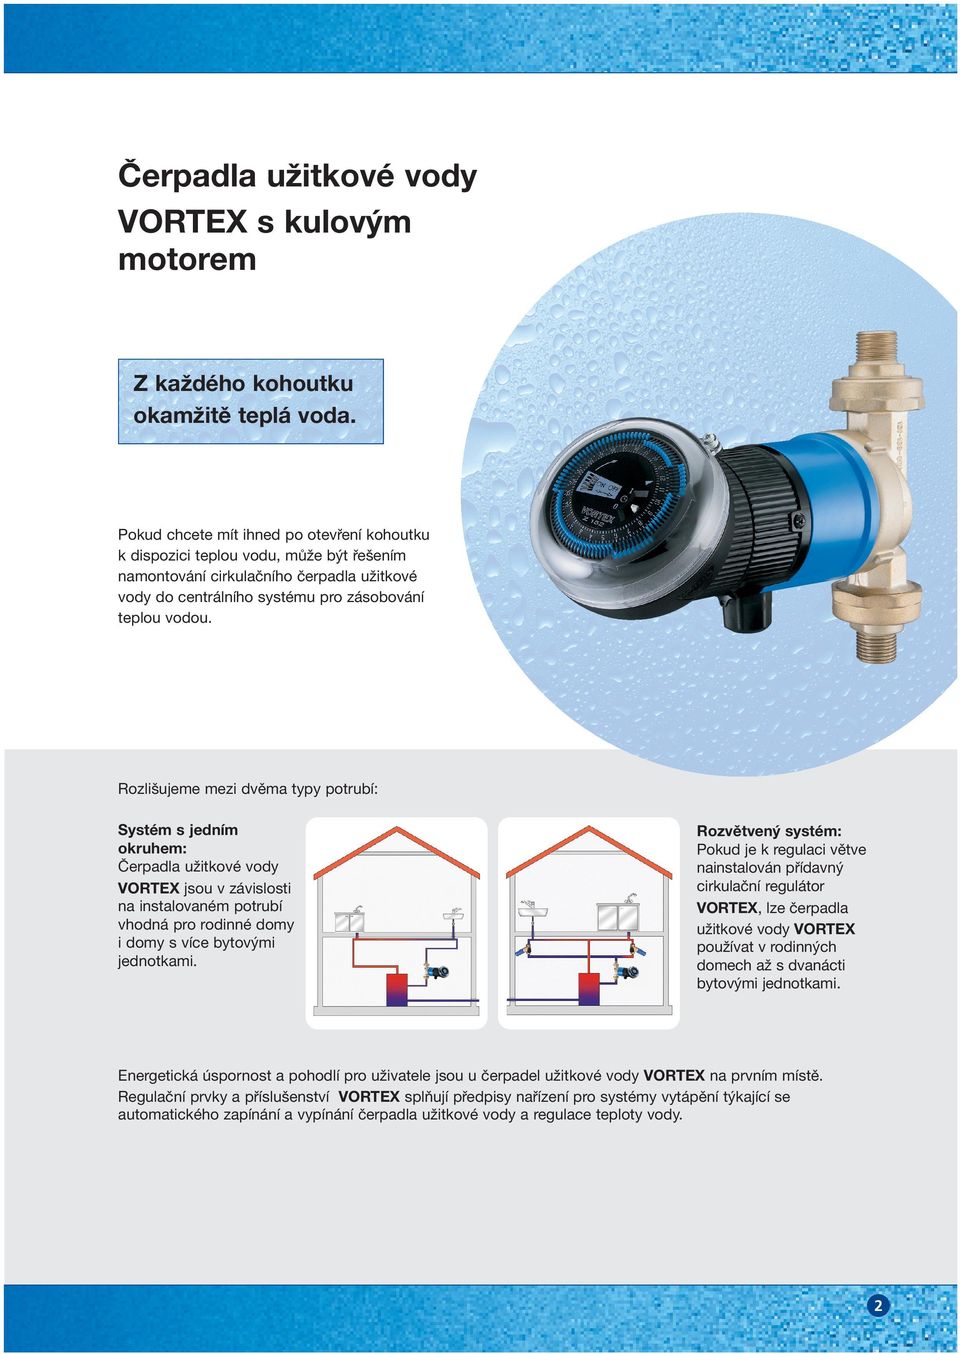 Rozlišujeme mezi dvěma typy potrubí: Systém s jedním okruhem: Čerpadla užitkové vody VORTEX jsou v závislosti na instalovaném potrubí vhodná pro rodinné domy i domy s více bytovými jednotkami.